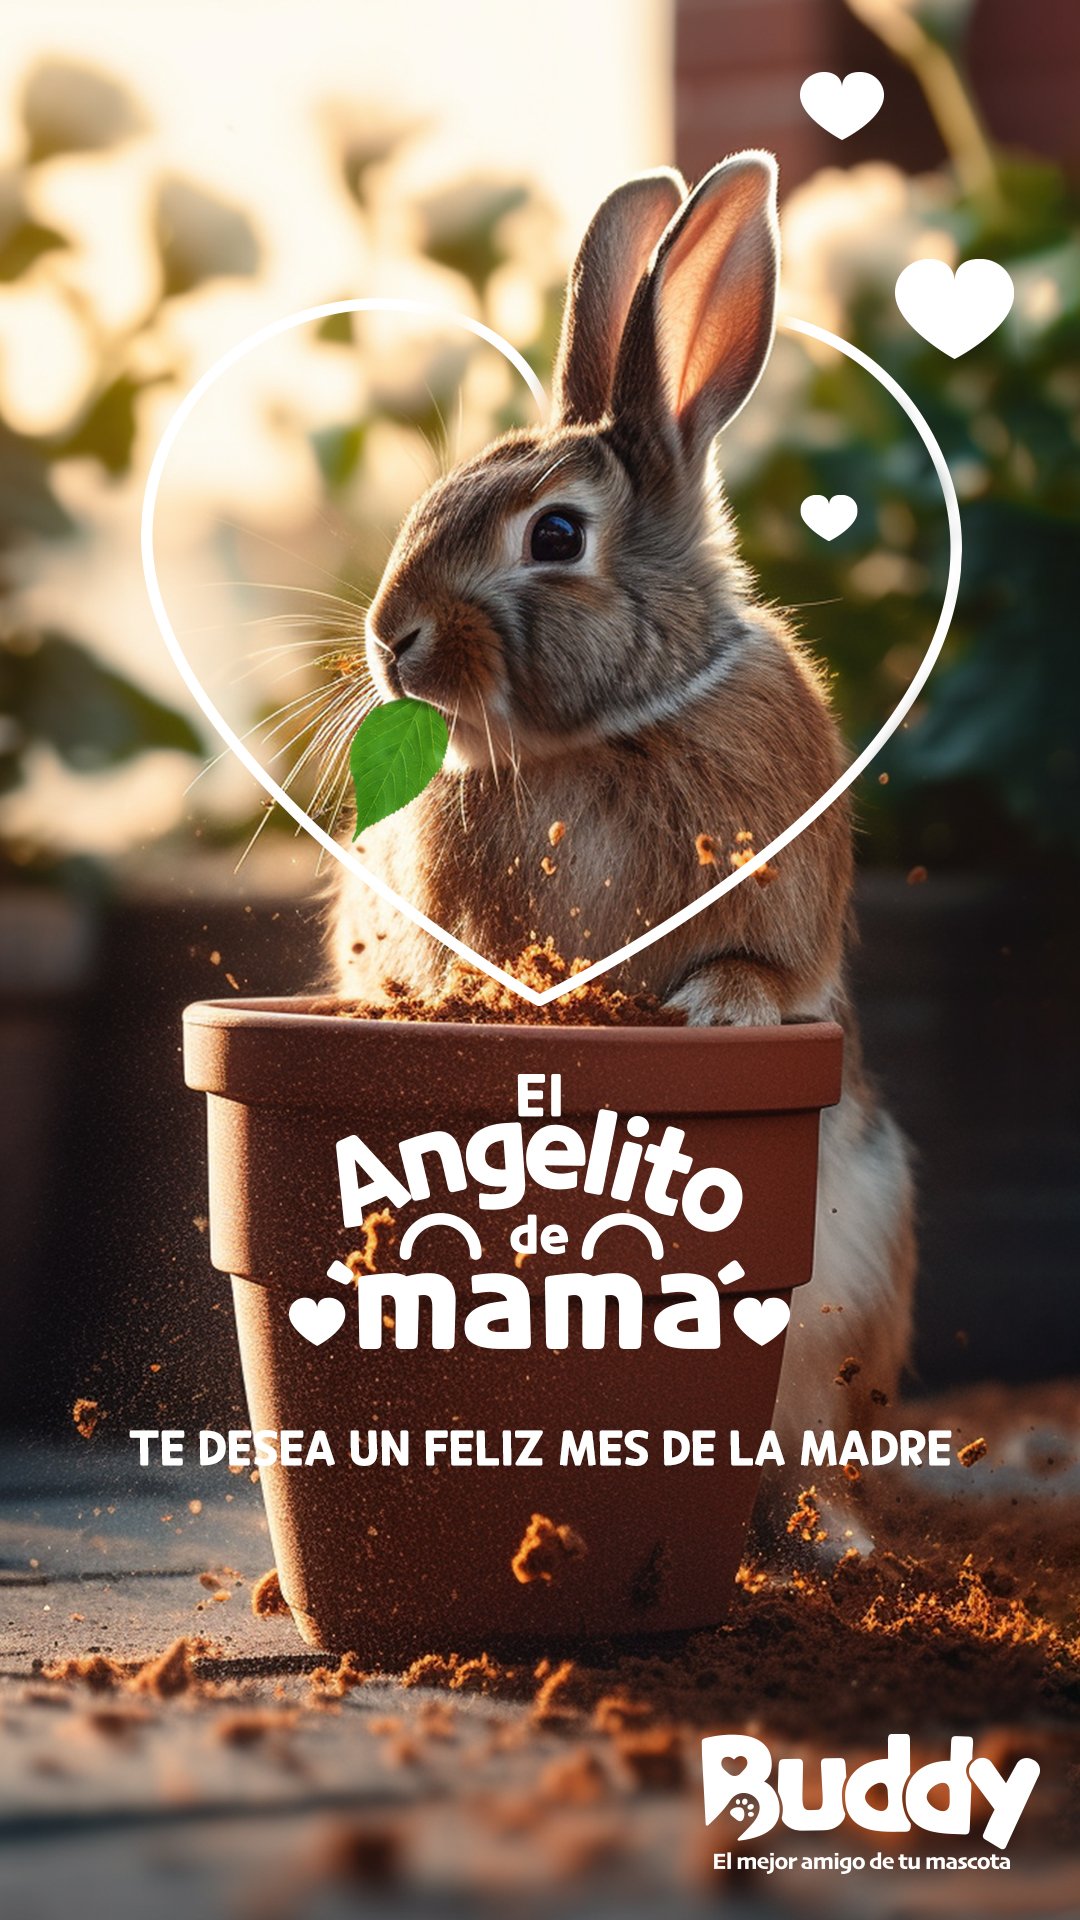 El Angelito de mamá story Bunny